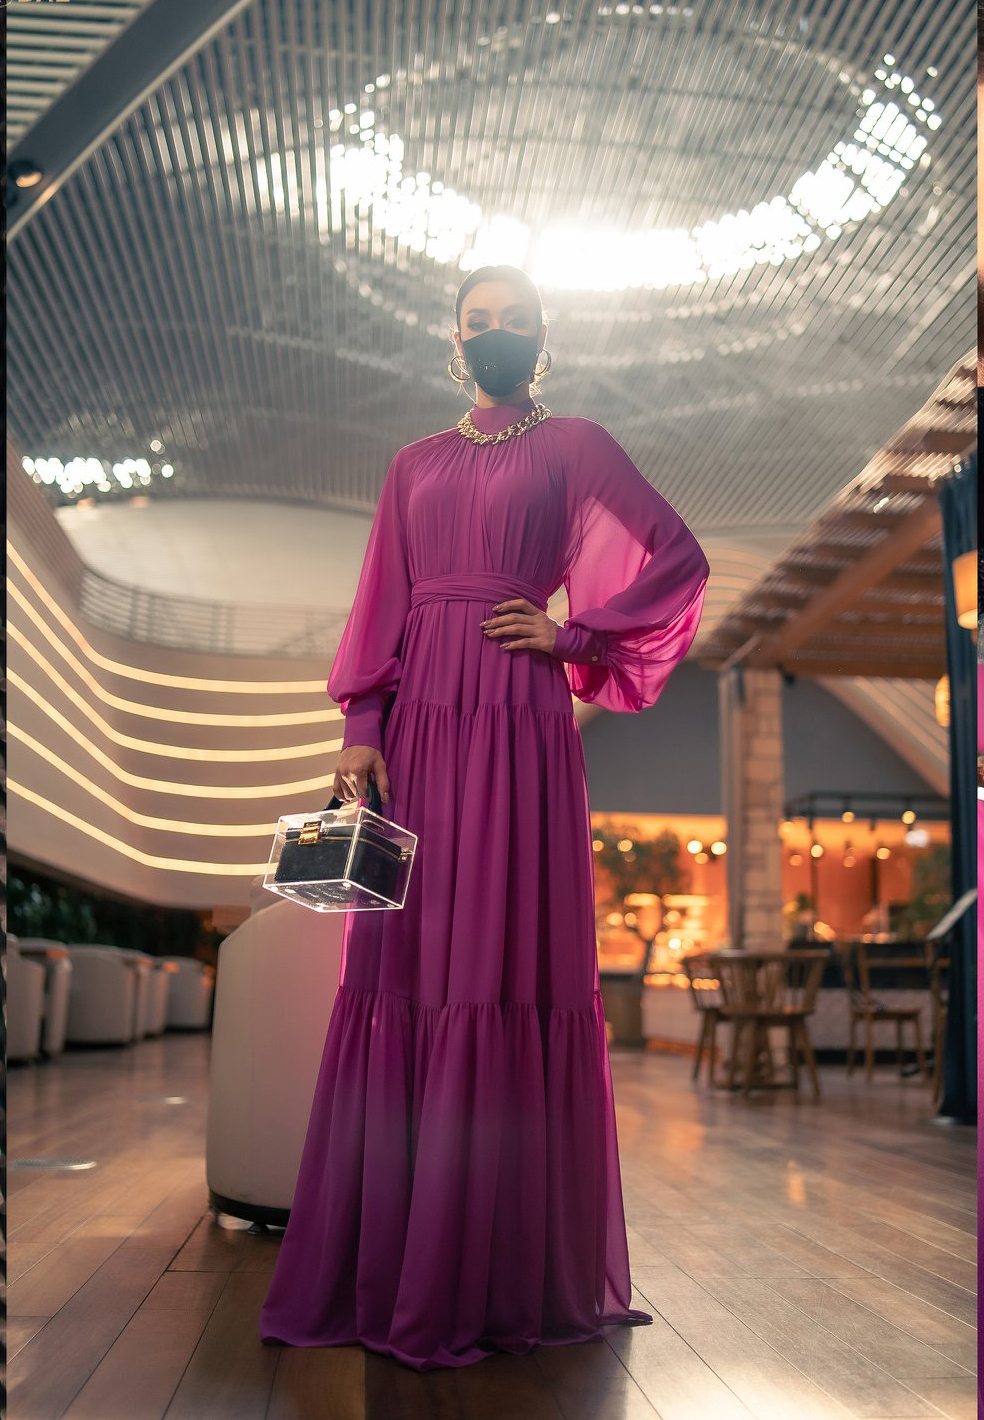 Trong phòng chờ chuẩn bị lên máy bay để tiếp tục hành trình đến Mỹ, Amanda thay một bộ váy khác màu hồng rực rỡ, phom dáng rộng, thoải mái, chất liệu mềm nhẹ của Avasa, cùng trang sức của hãng Pun và túi S'Uvimol có thiết kế rất độc đáo.